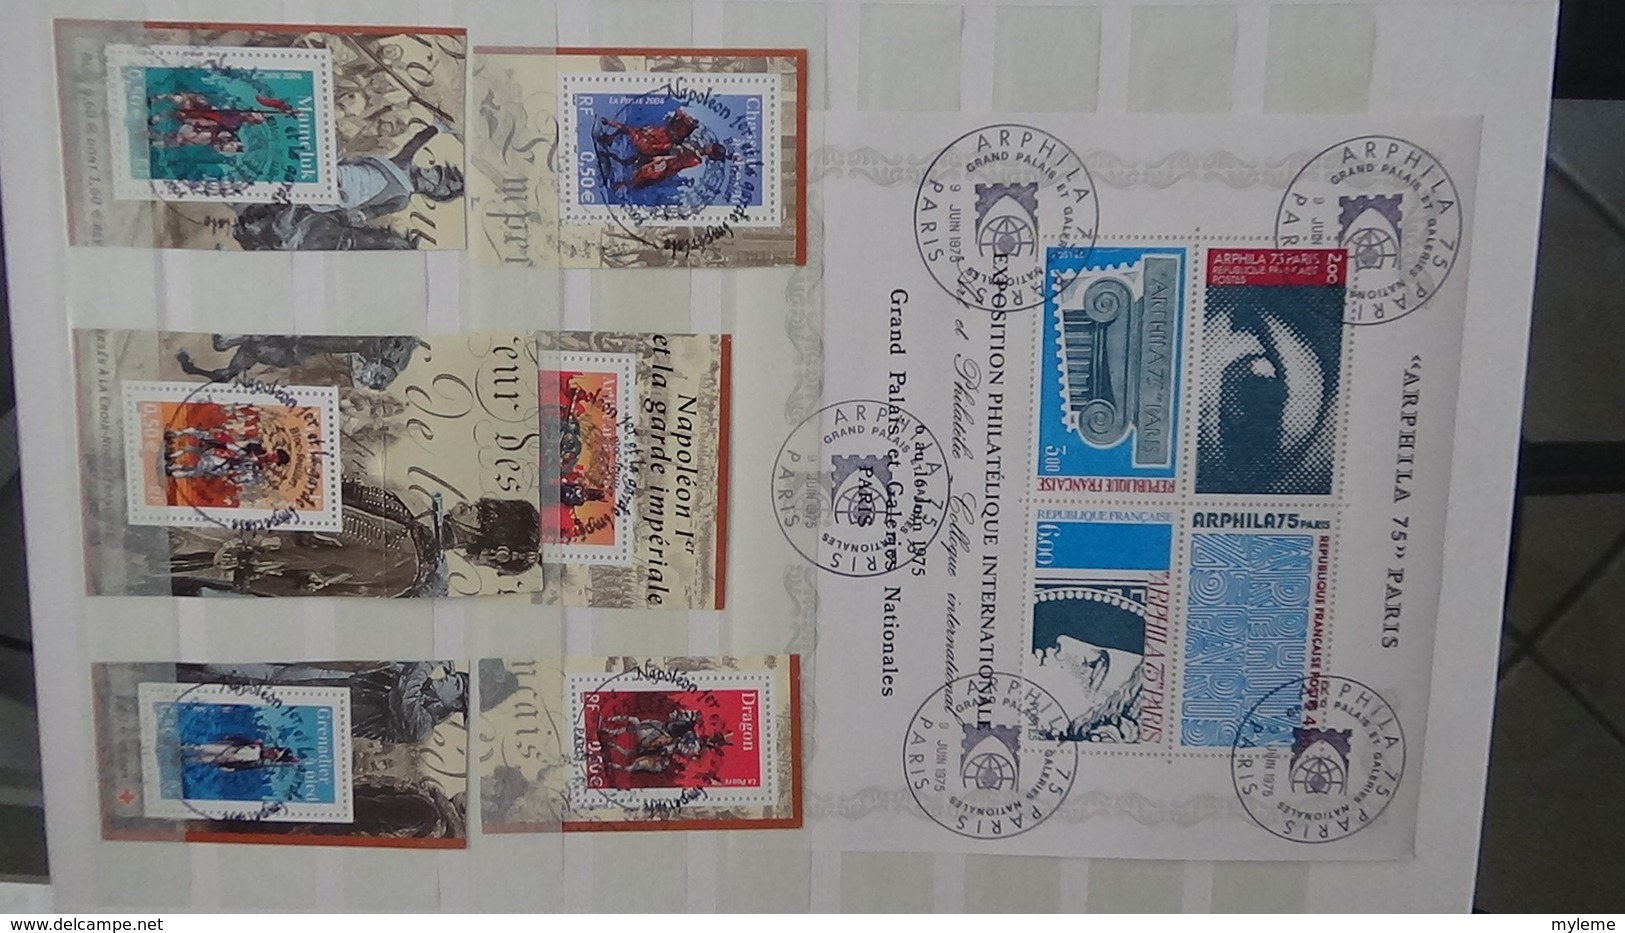 Collection France oblitéré timbres, blocs, documents tous belle oblitération 1er jour